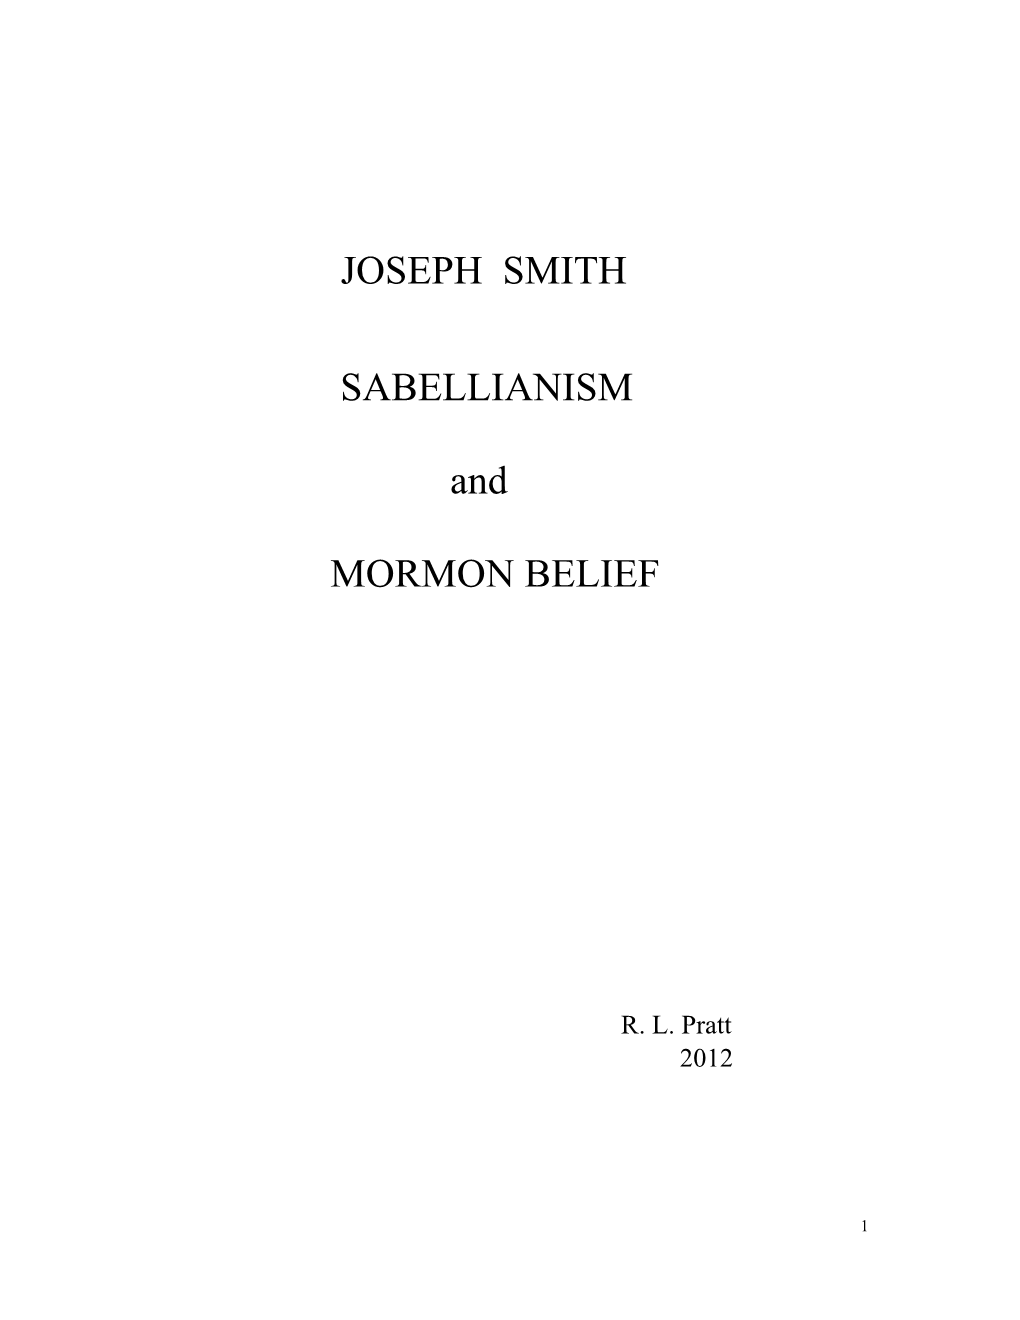 JOSEPH SMITH SABELLIANISM and MORMON BELIEF